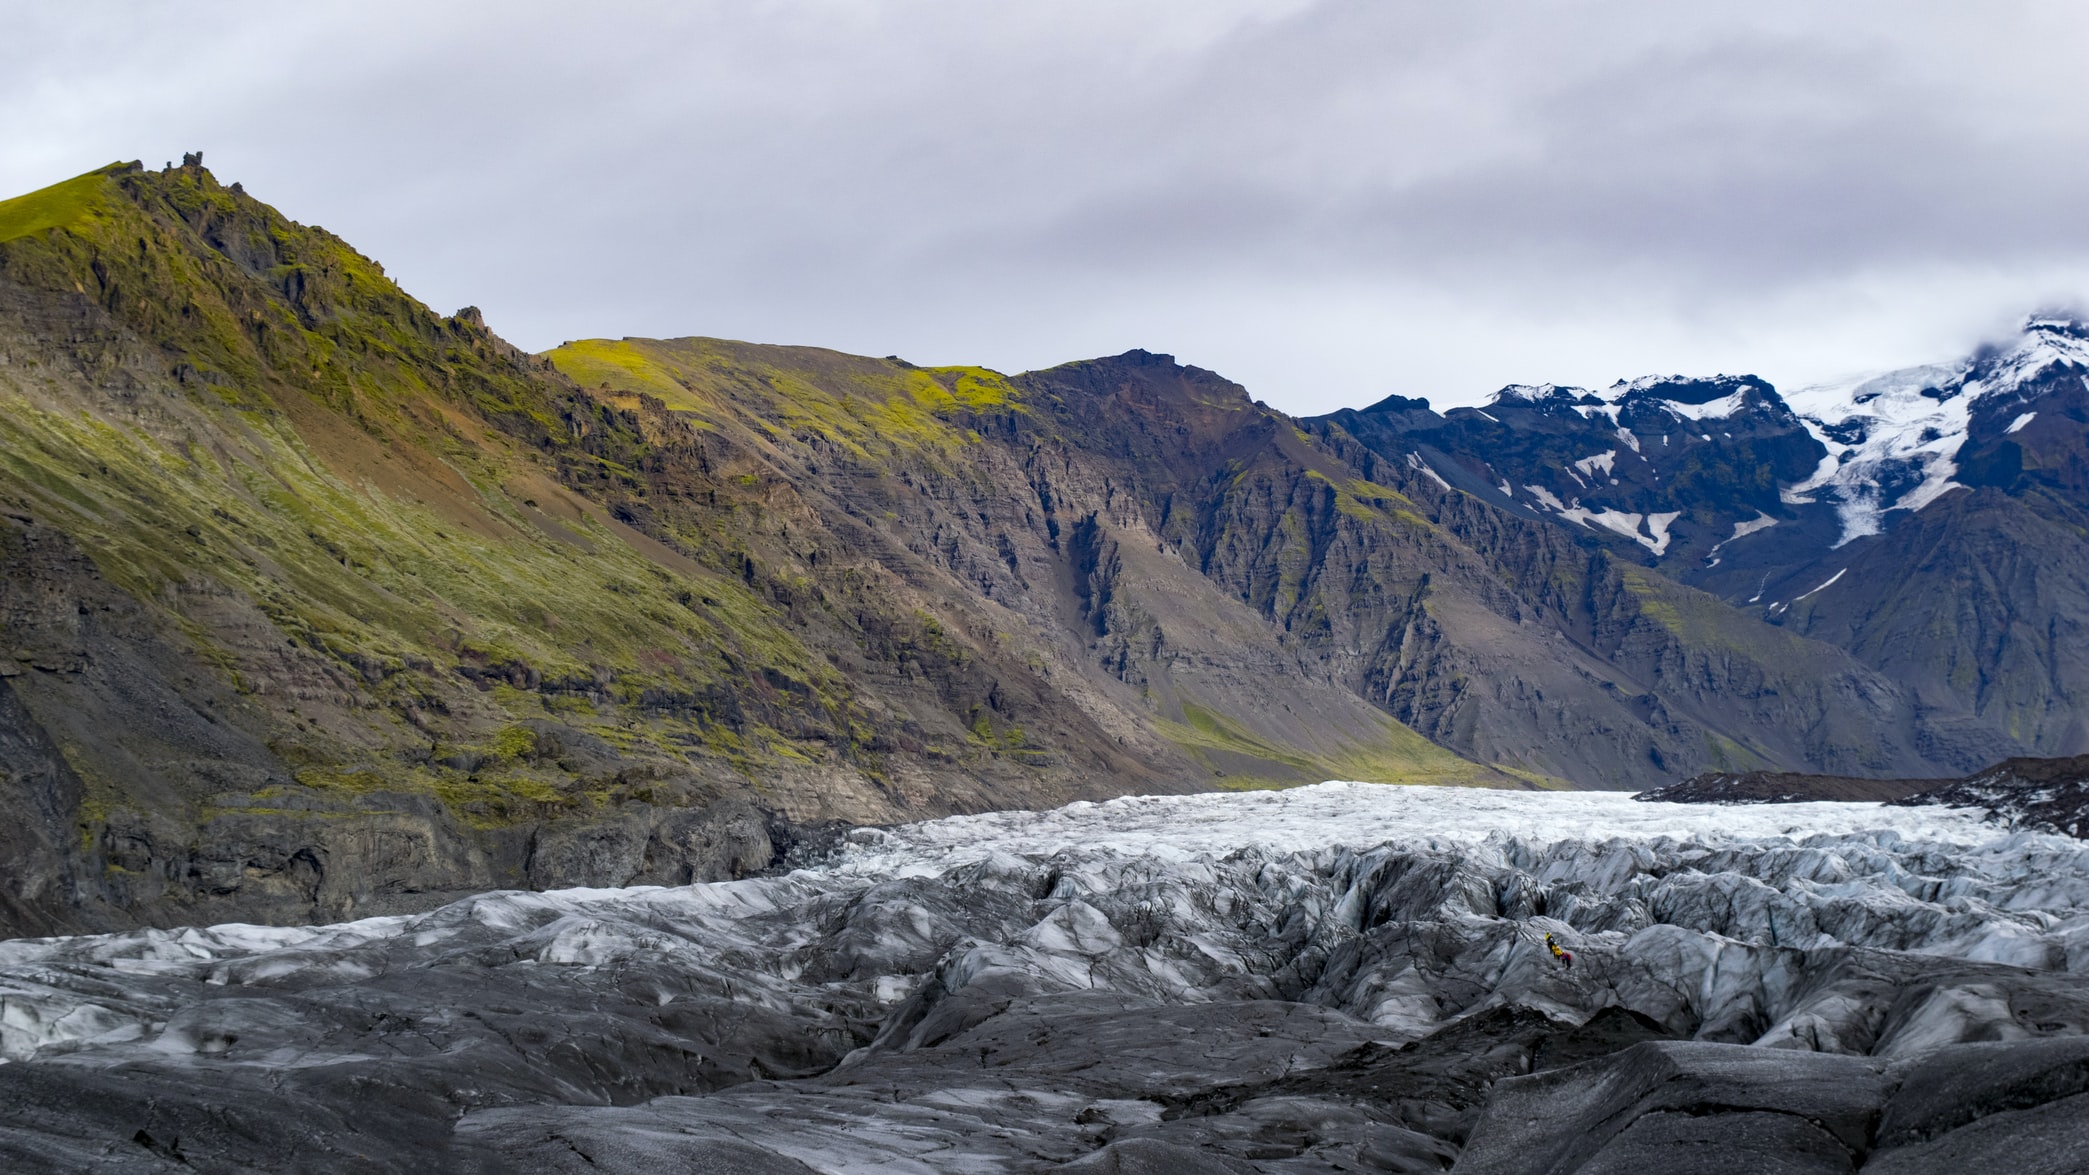 索尔黑马冰川是冰岛最受欢迎的冰川徒步目的地之一